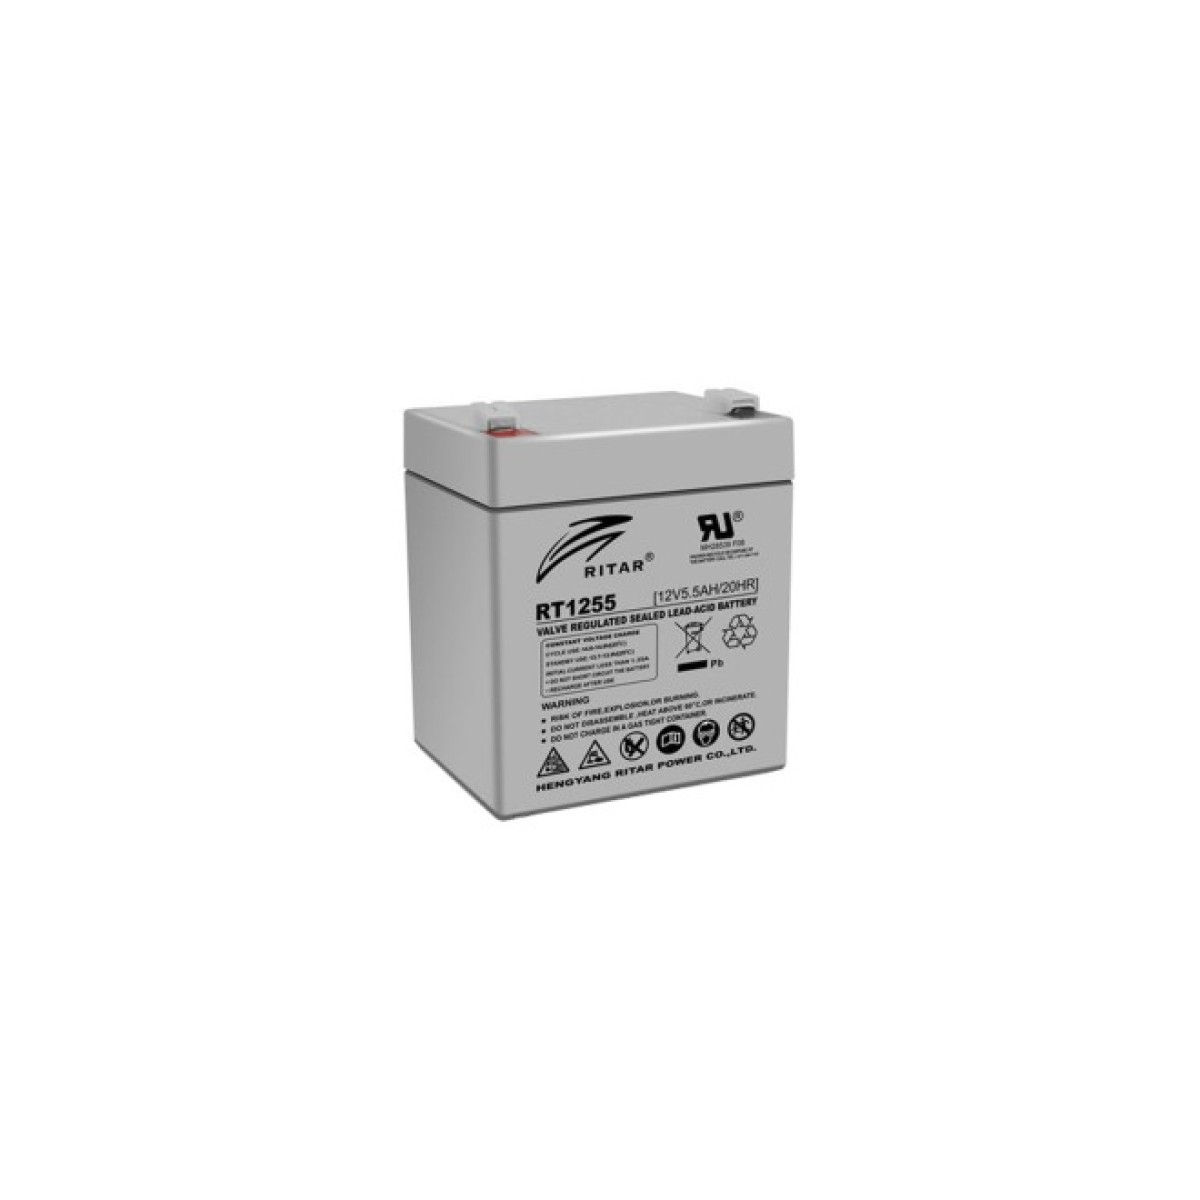 Батарея к ИБП Ritar AGM RT1255, 12V-5.5Ah (RT1255) 256_256.jpg